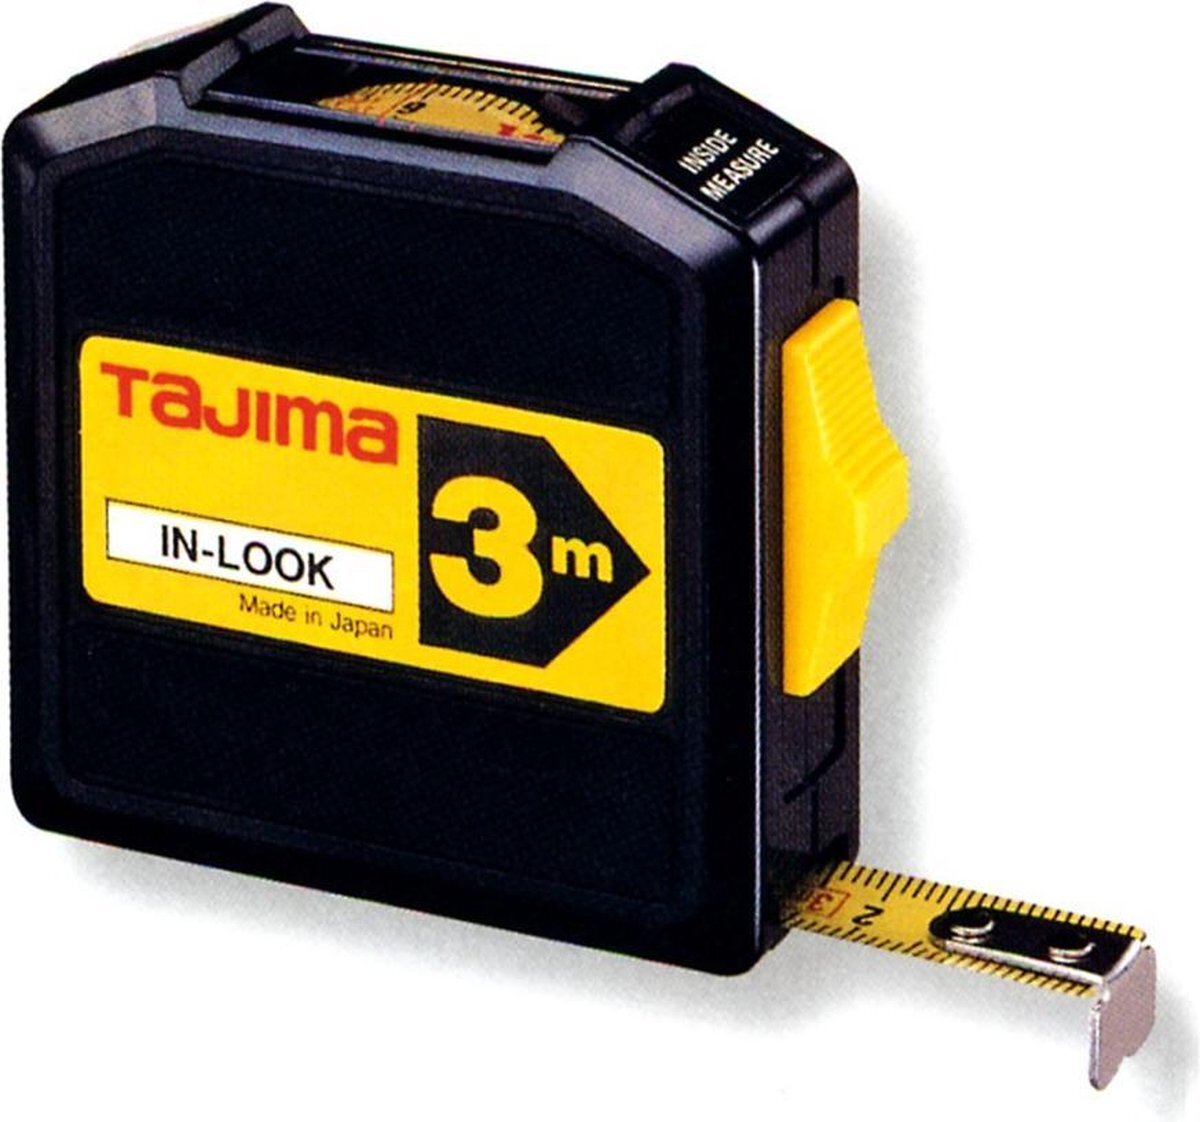 Tajima Rolmeter IN-LOOK 3 m x 13 mm